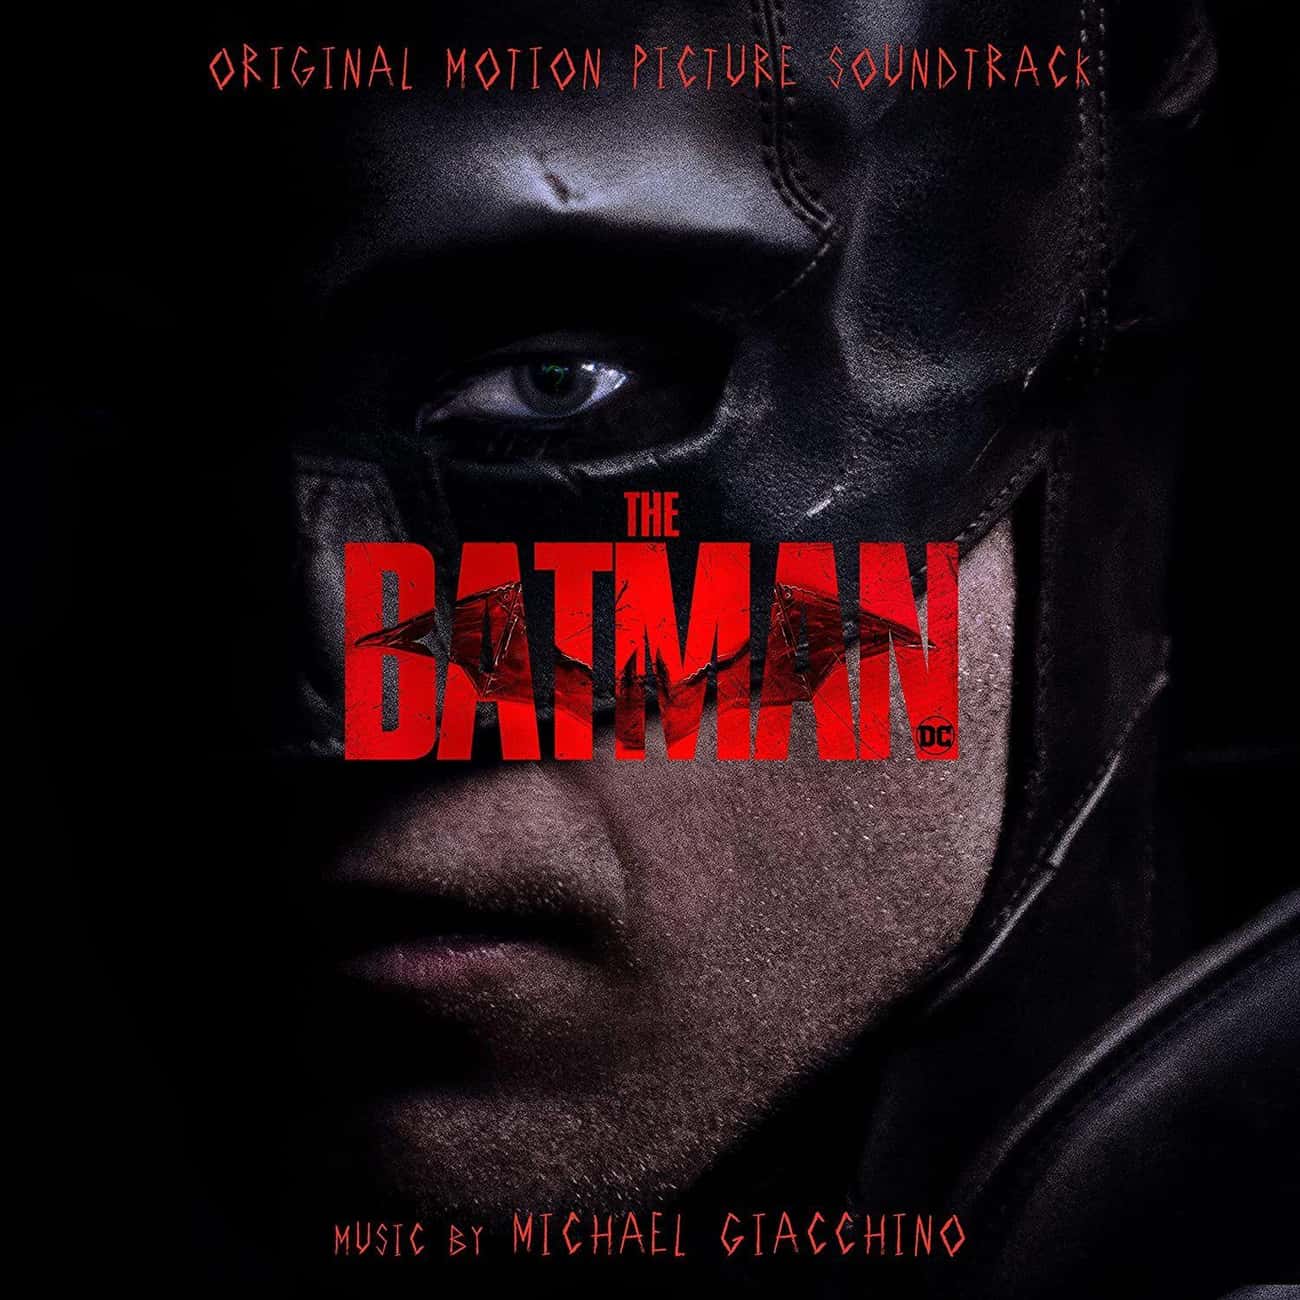 The Batman (Original Motion Picture Soundtrack)